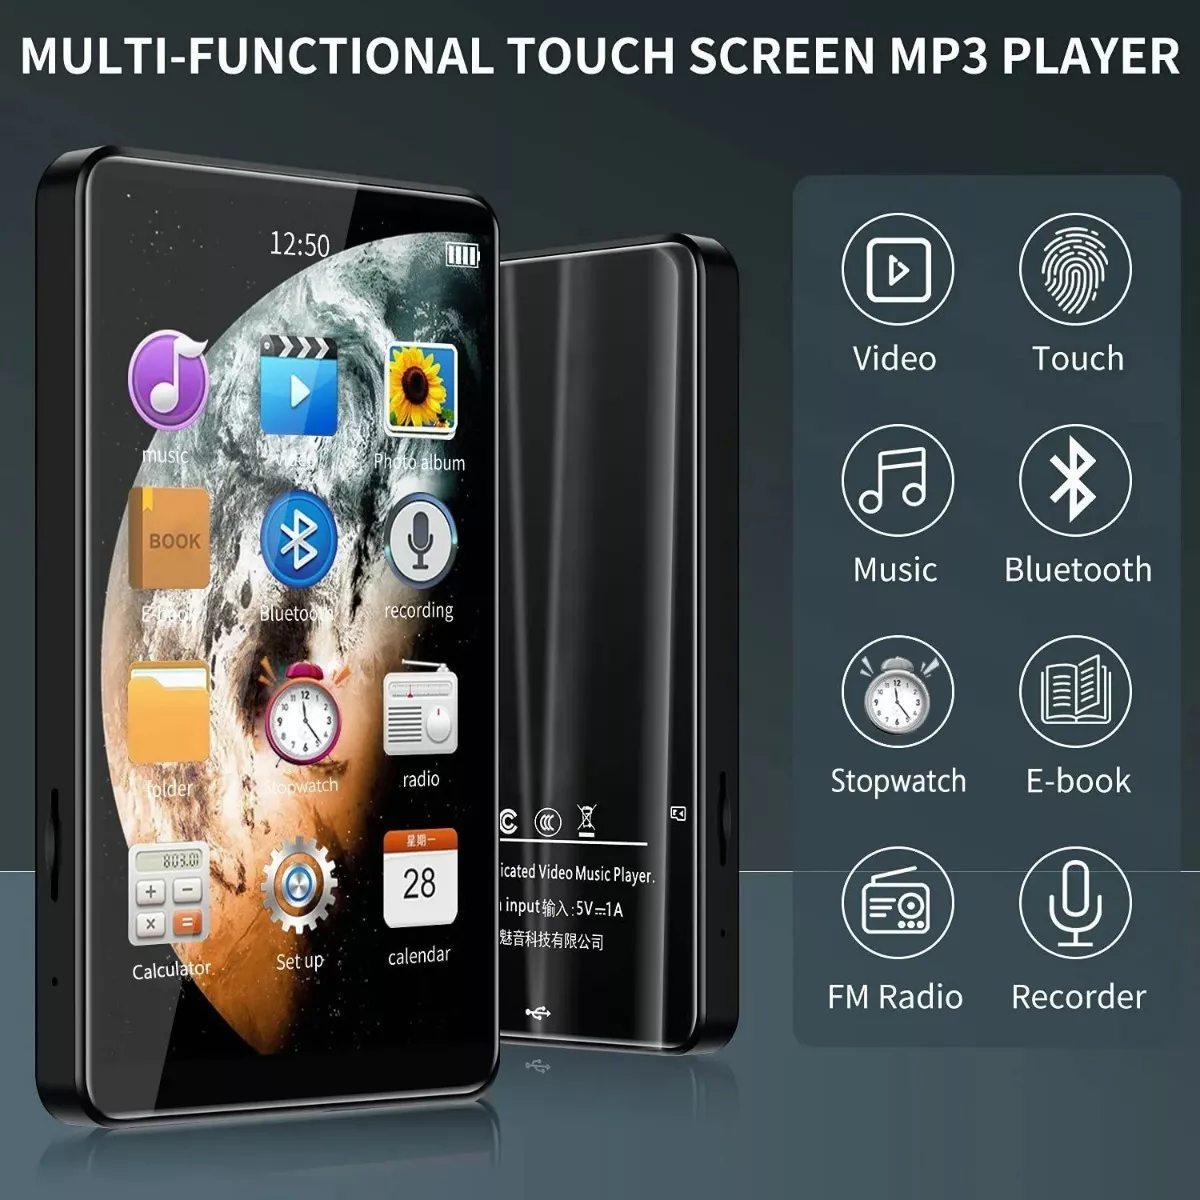 Reproductor Mp3 Mp4 Bluetooth Con Pantalla Táctil